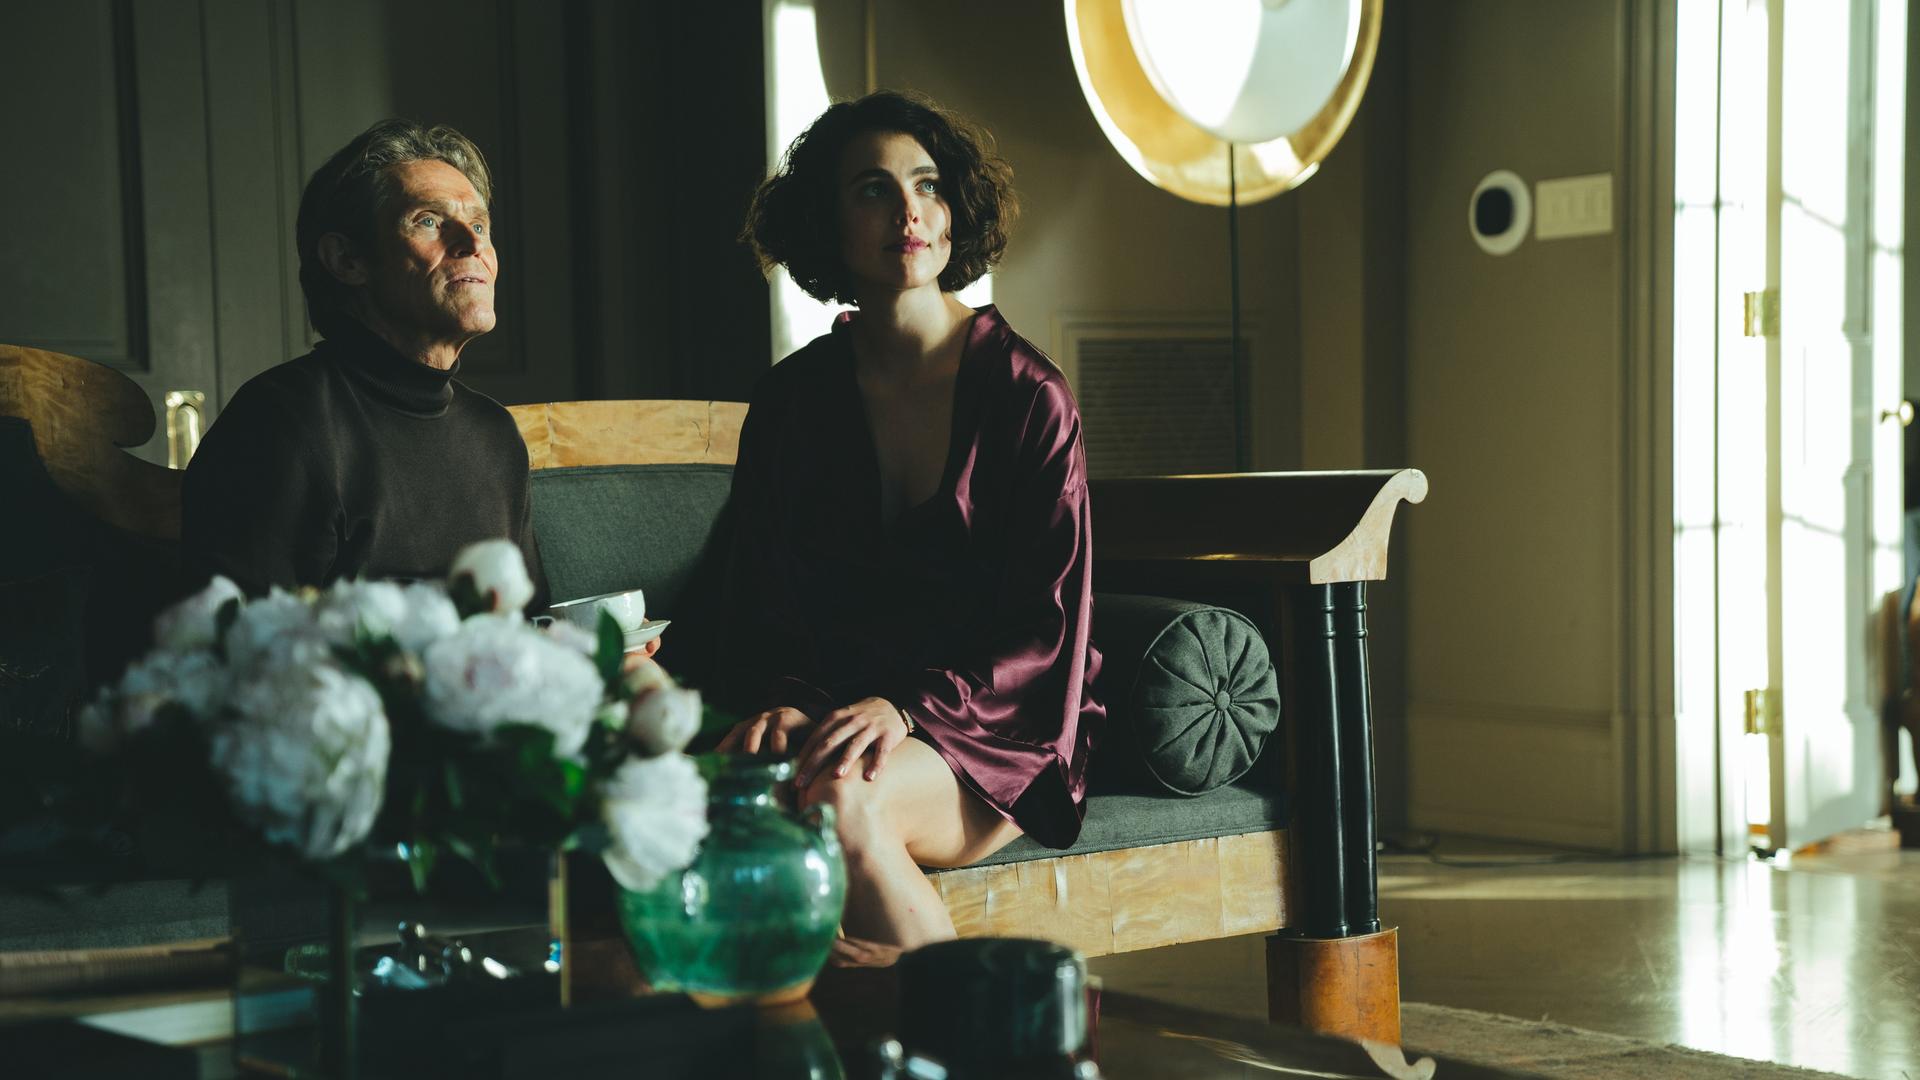 Willem Dafoe and Margaret Qualley sitzen in einer Szene des Films "Kinds Of Kindness" von Yorgos Lanthimos nebeneinander auf einem Sofa.